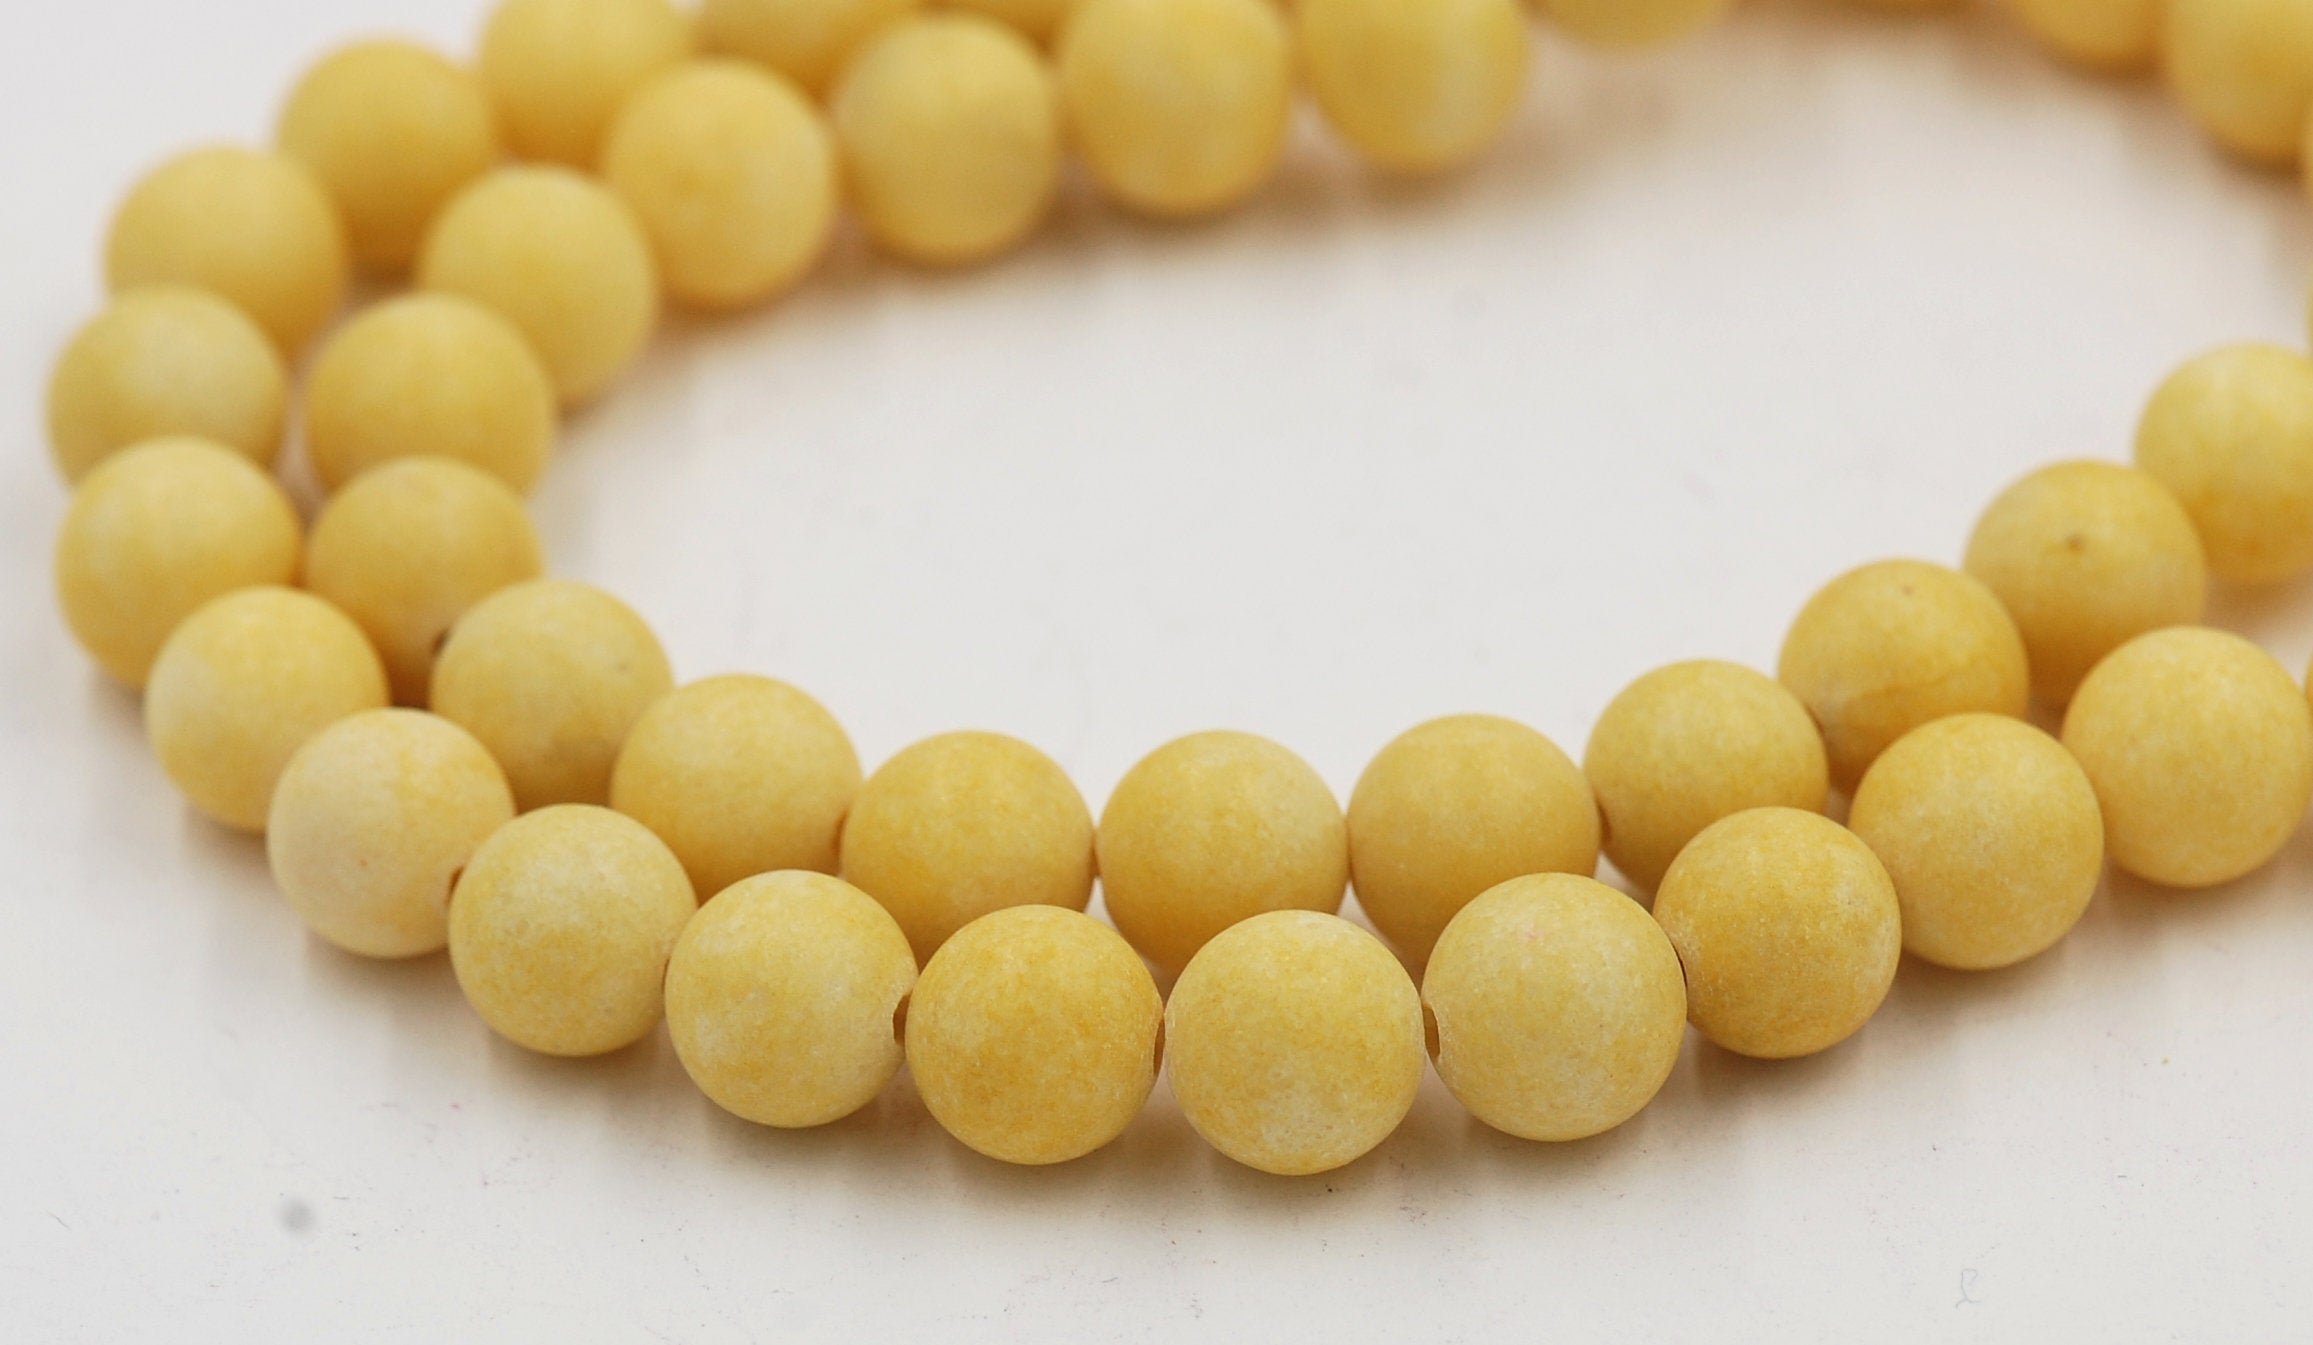 6mm, 8mm, 10mm, 12mm Matte Yellow Jade Round Beads -15 inch strand